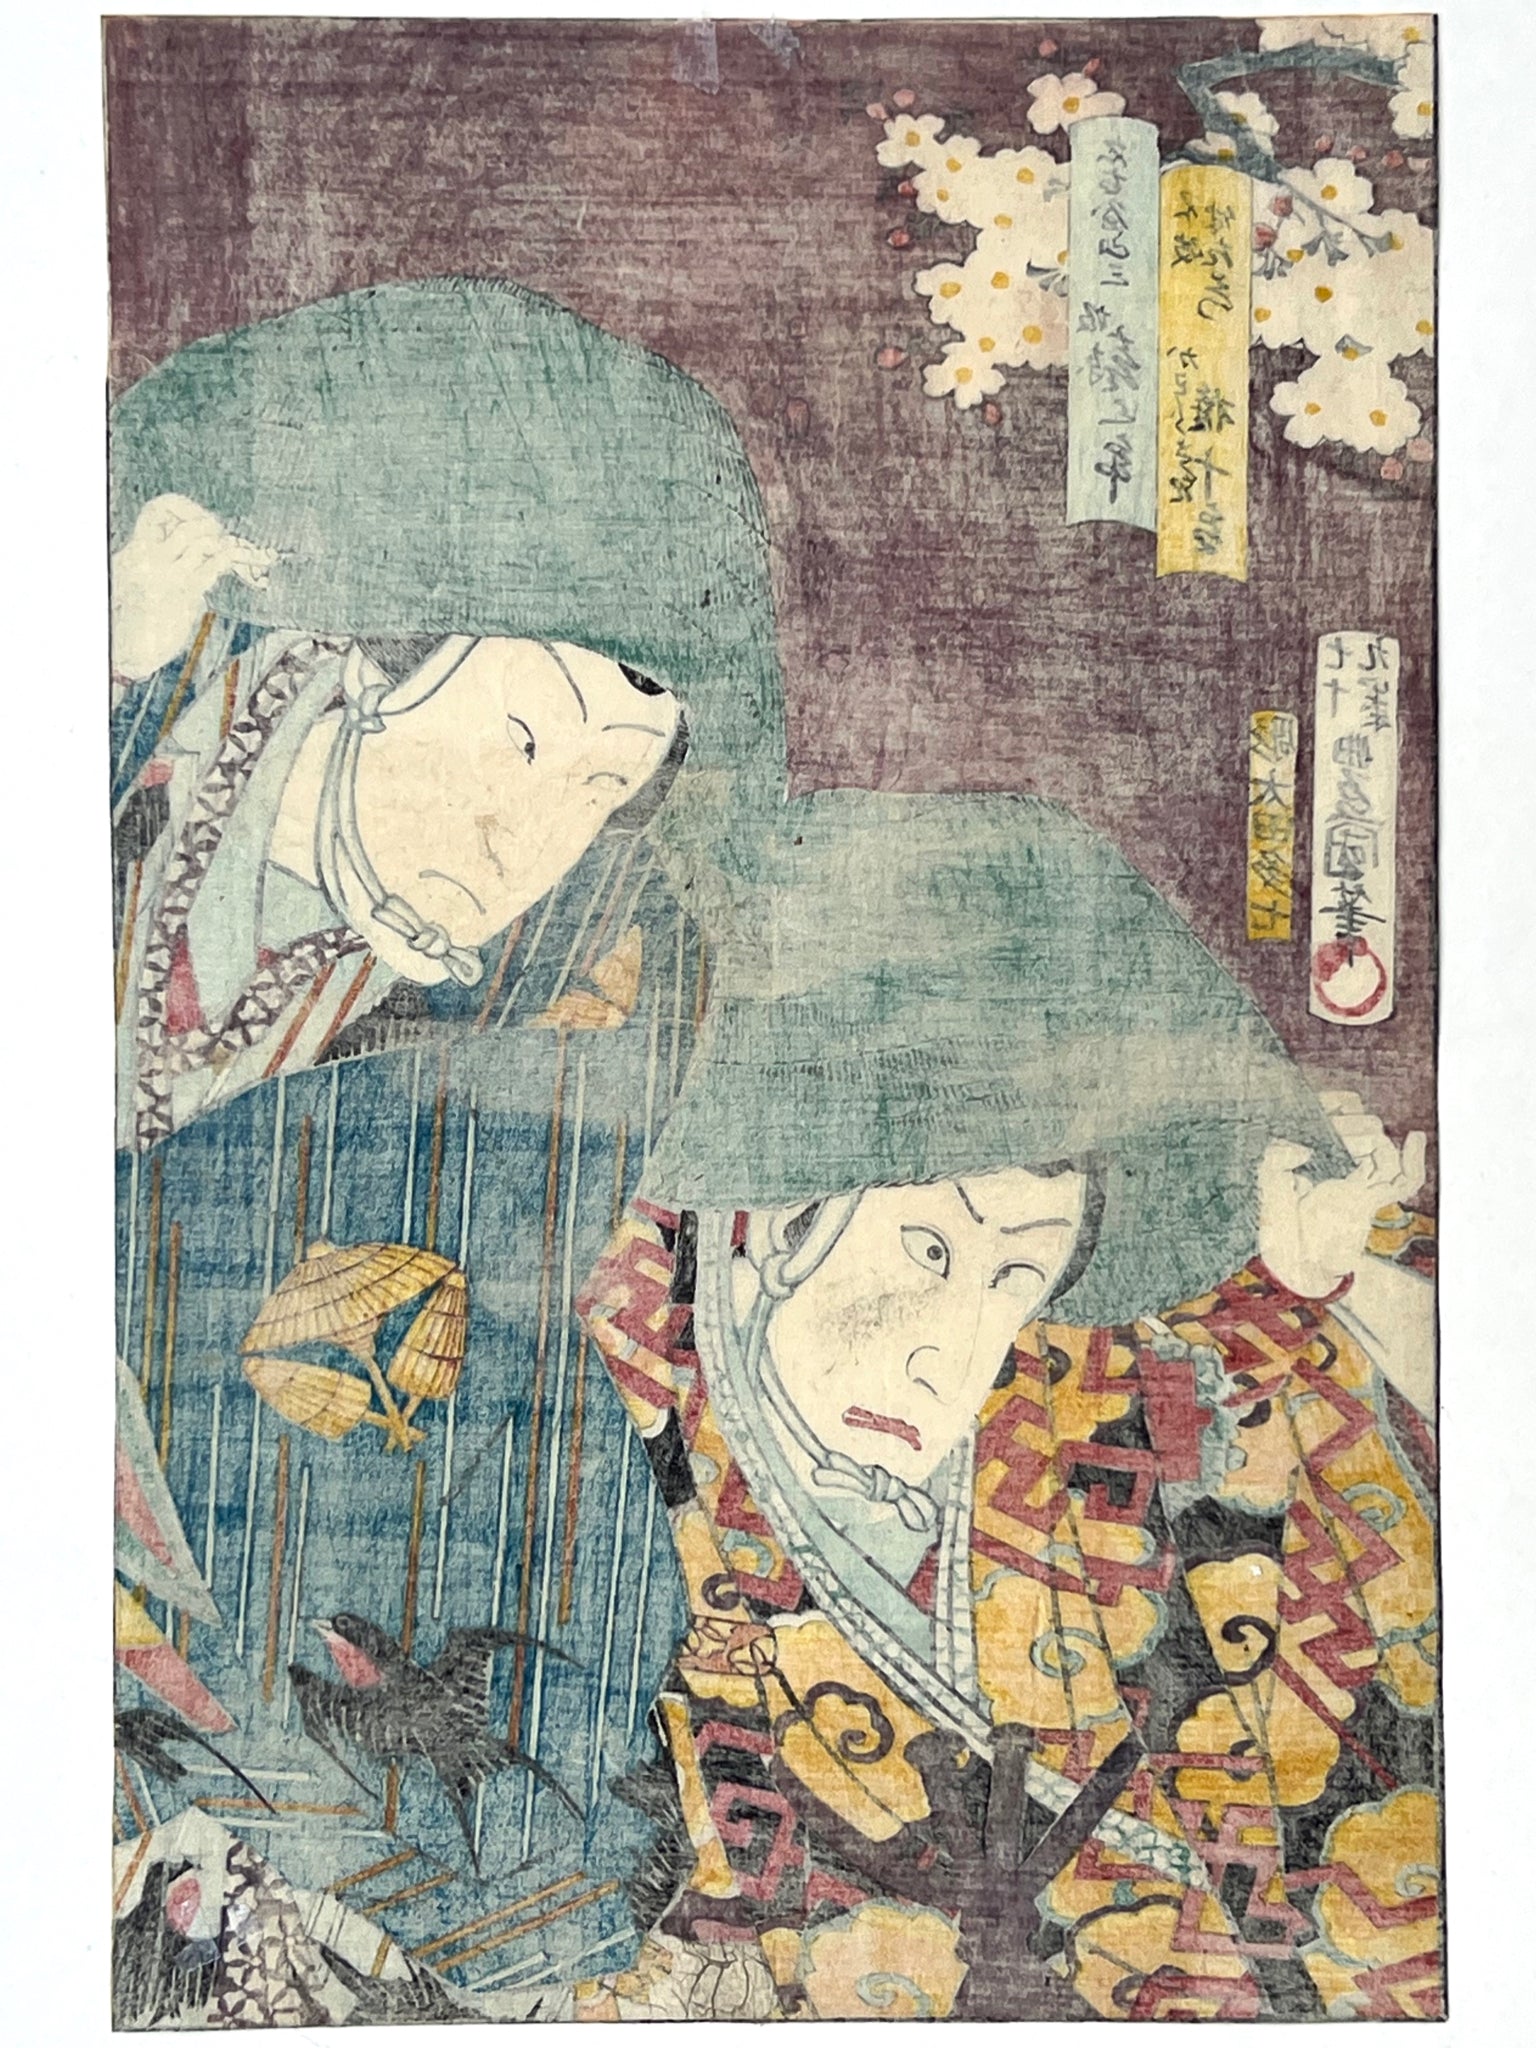 estampe japonaise deux acteurs de kabuki avec chapeaux vert, dos de l'estampe